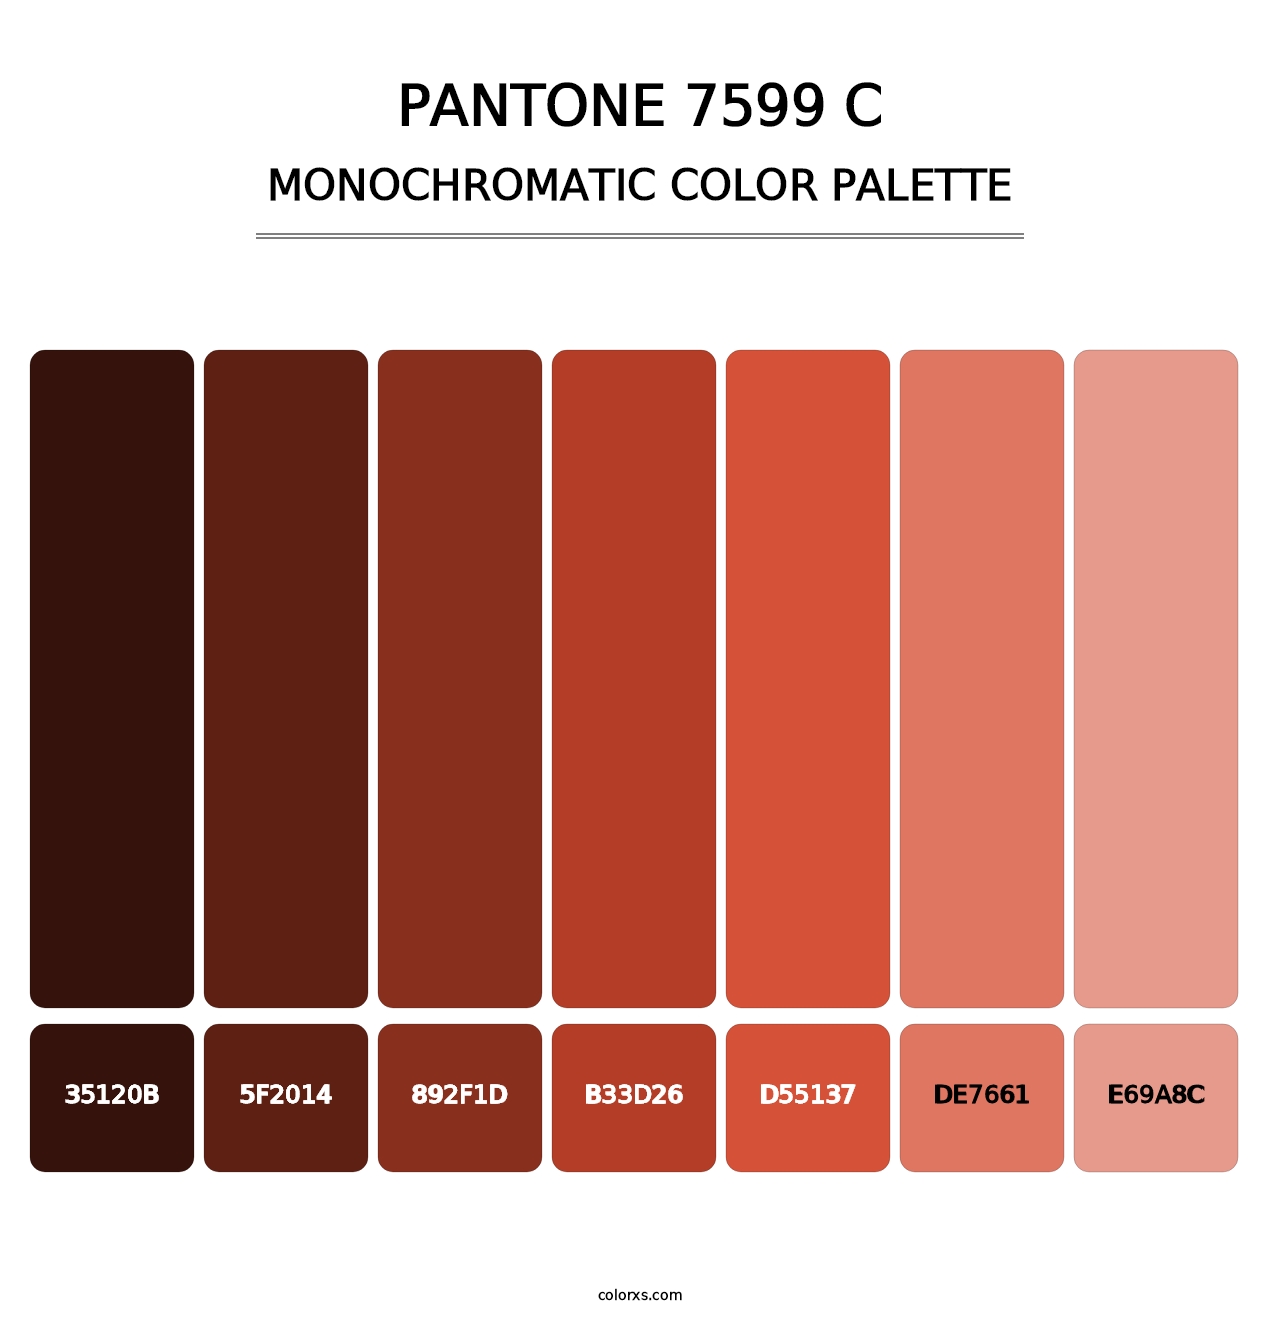 PANTONE 7599 C - Monochromatic Color Palette